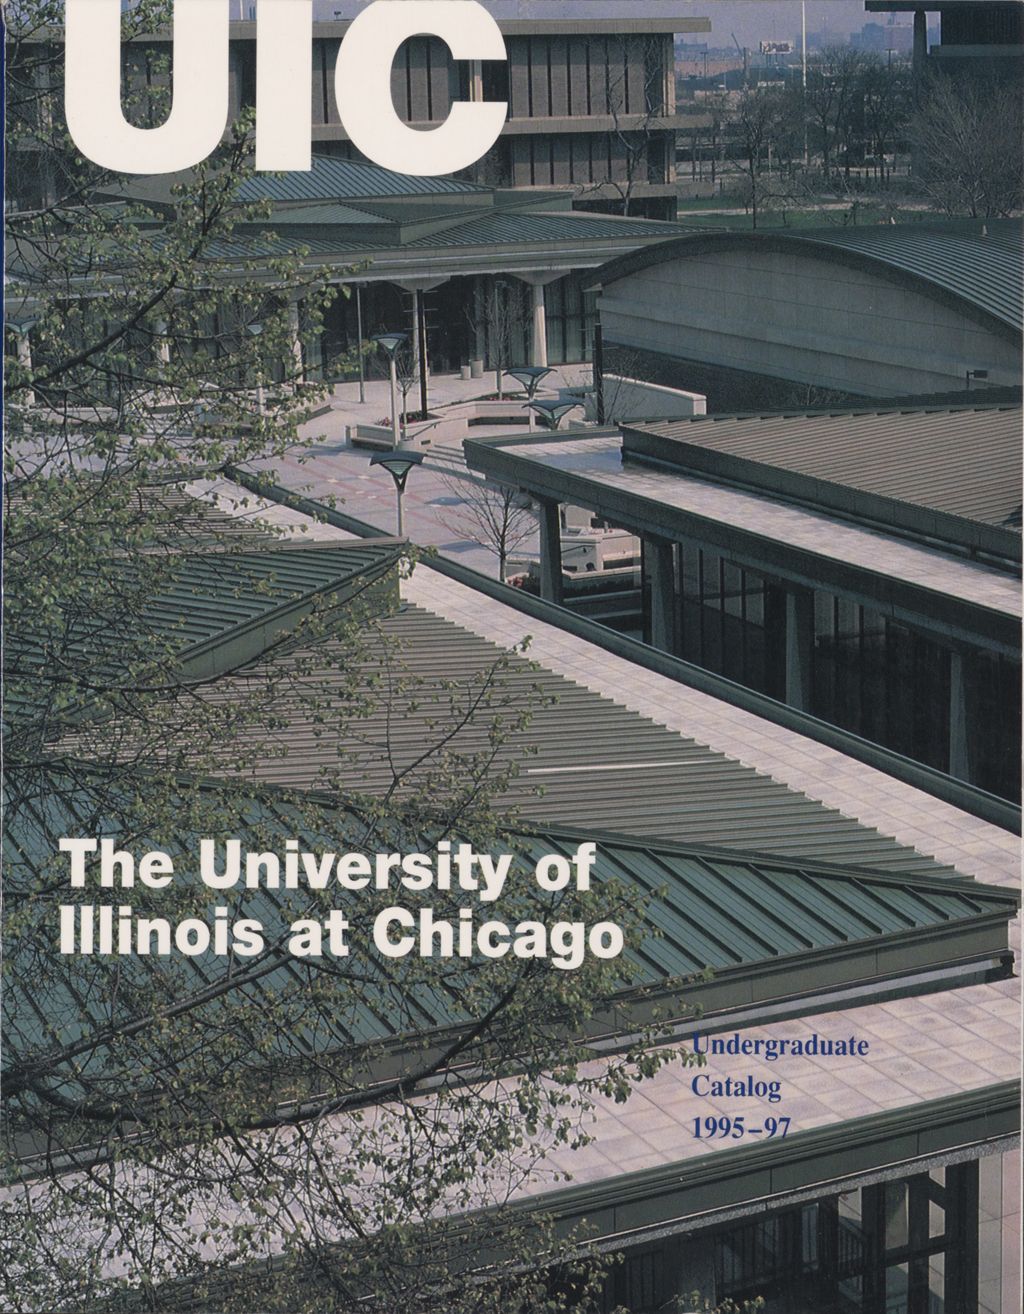 Undergraduate Catalog, 1995-1997